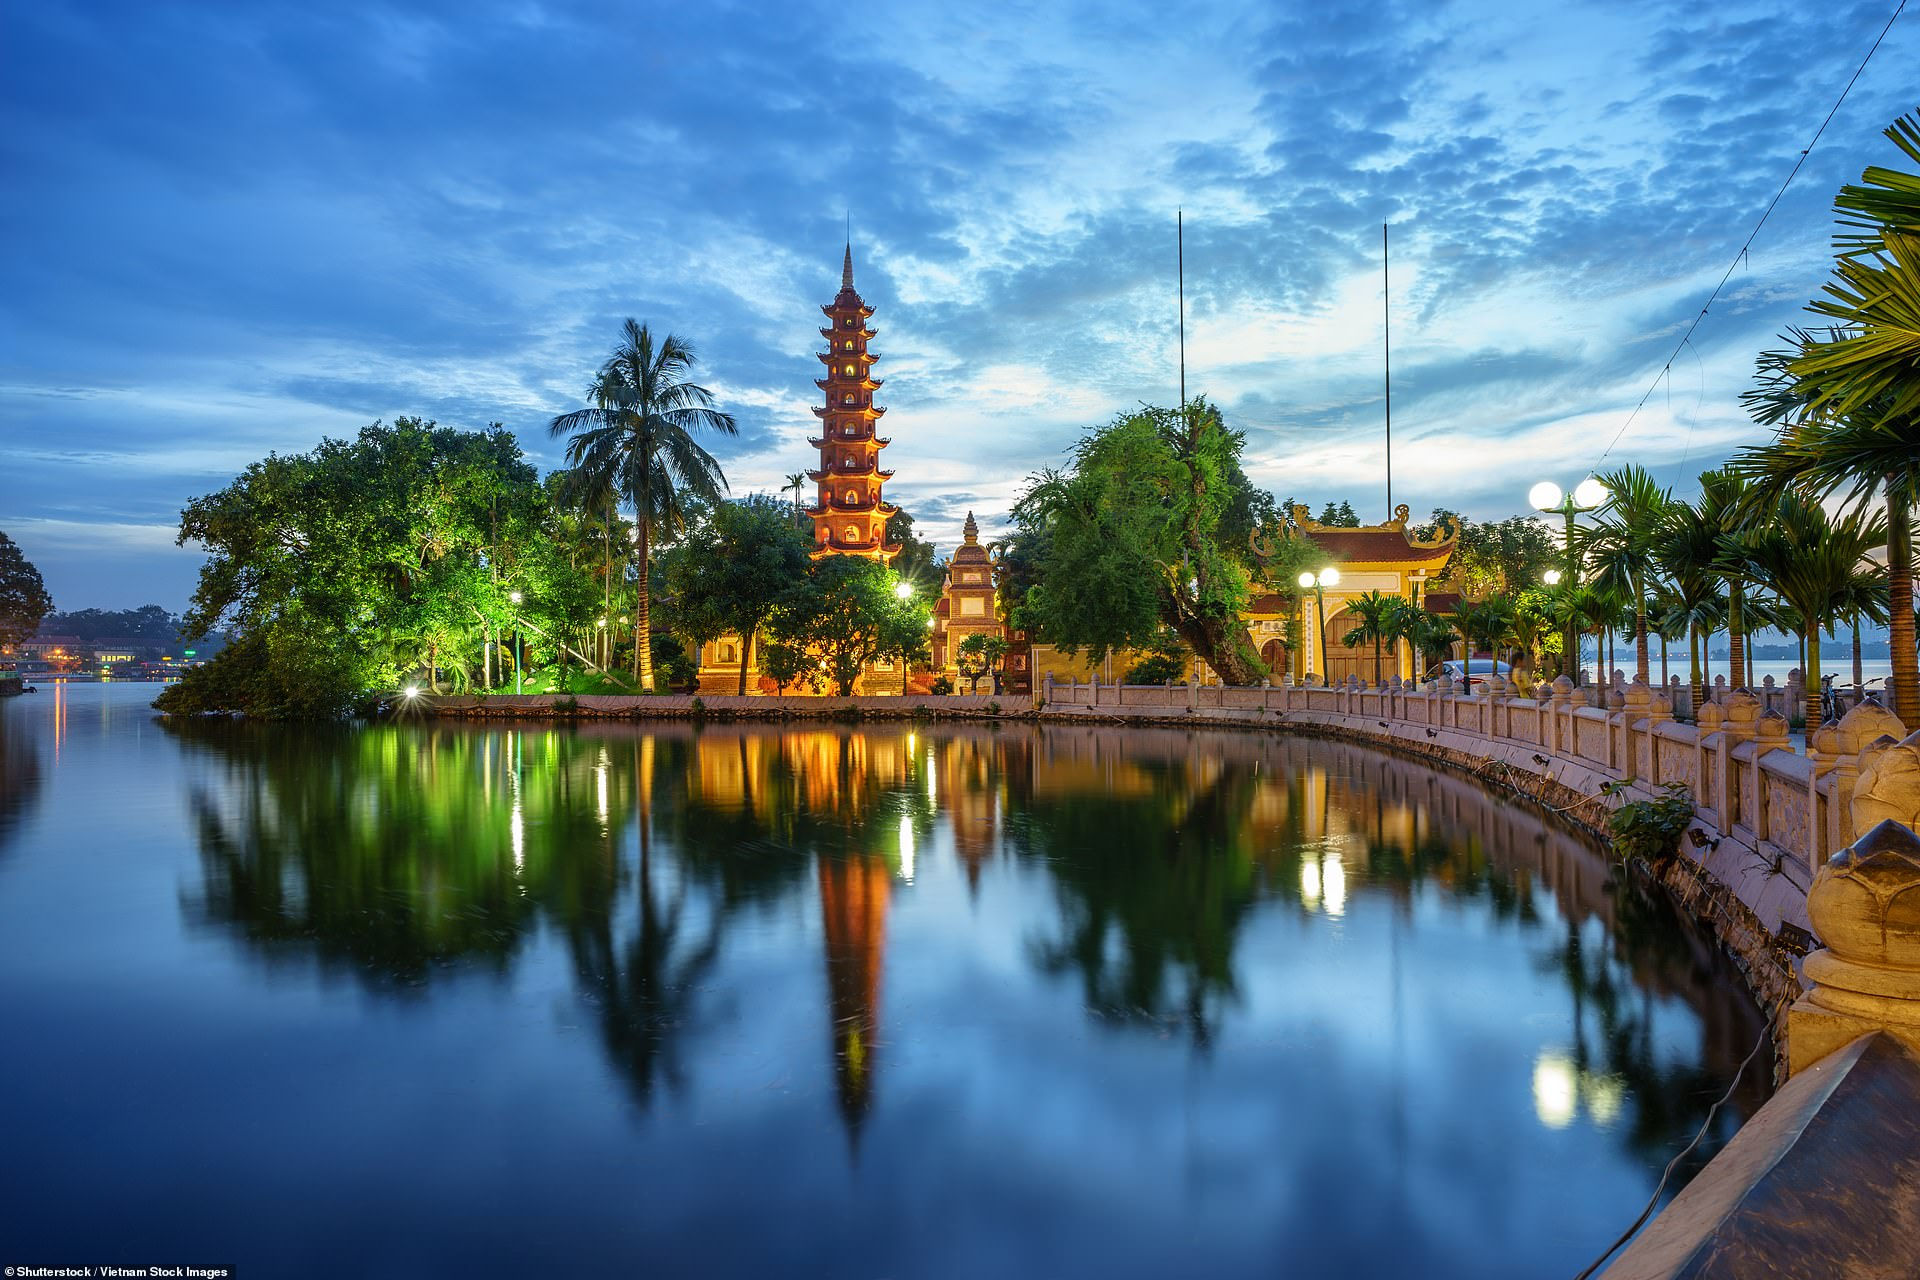 Nằm trên một bán đảo nhỏ ở phía Đông Hồ Tây, chùa Trấn Quốc được coi là ngôi chùa cổ nhất ở Hà Nội, với tuổi thọ trên 1.500 tuổi. Đây là một điểm đến thu hút khách du lịch khi đến với thủ đô.